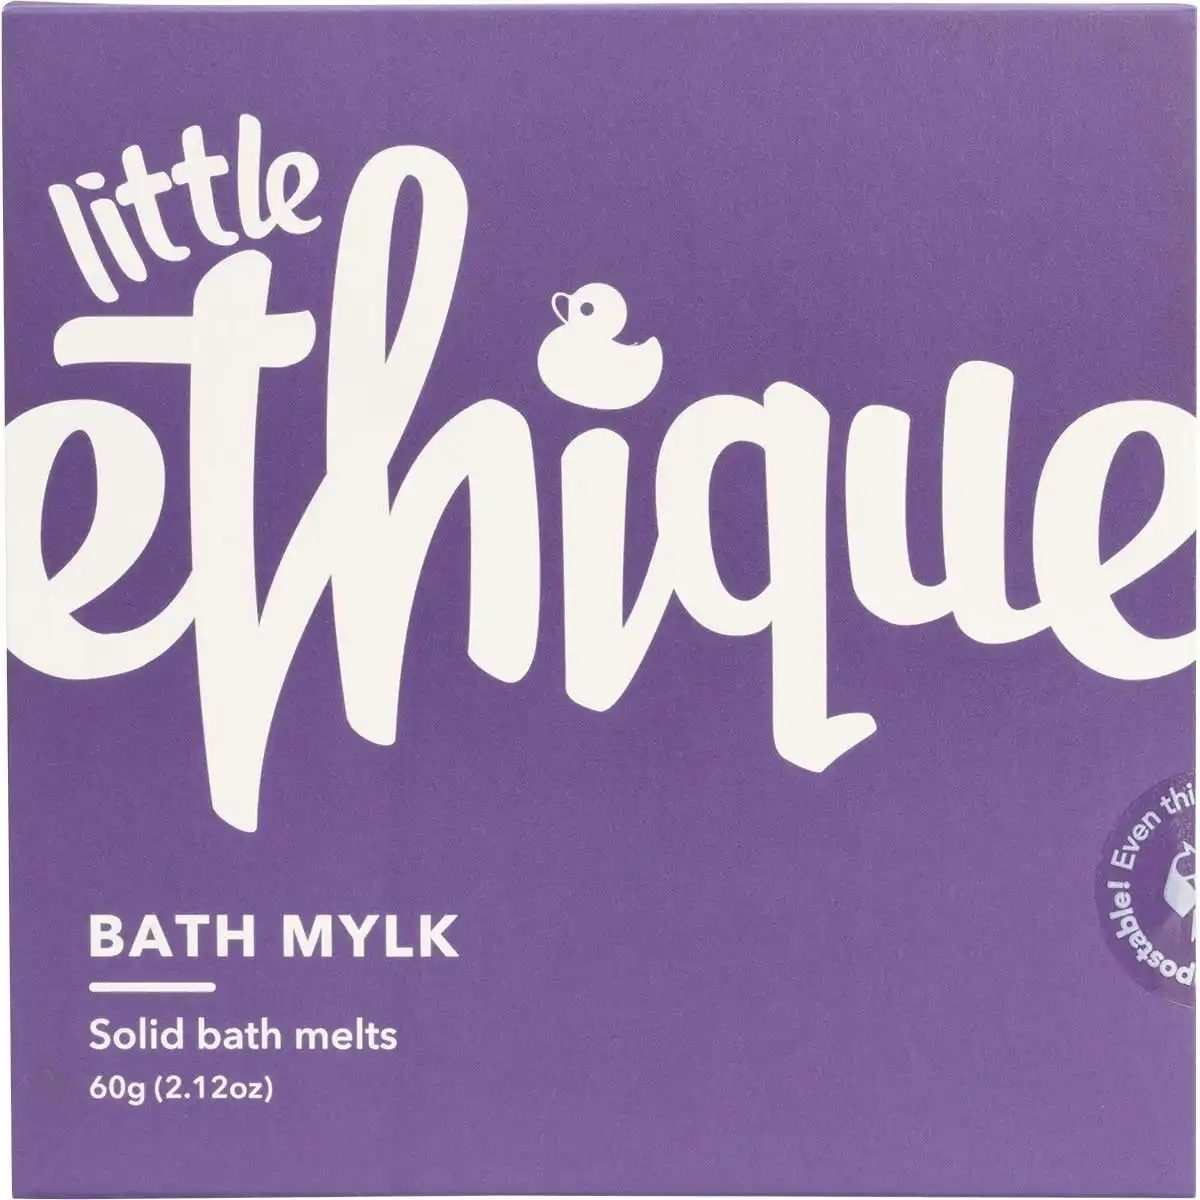 LITTLE ETHIQUE Solid Bath Melts 4x Minis - Bath Mylk (kids) 60g